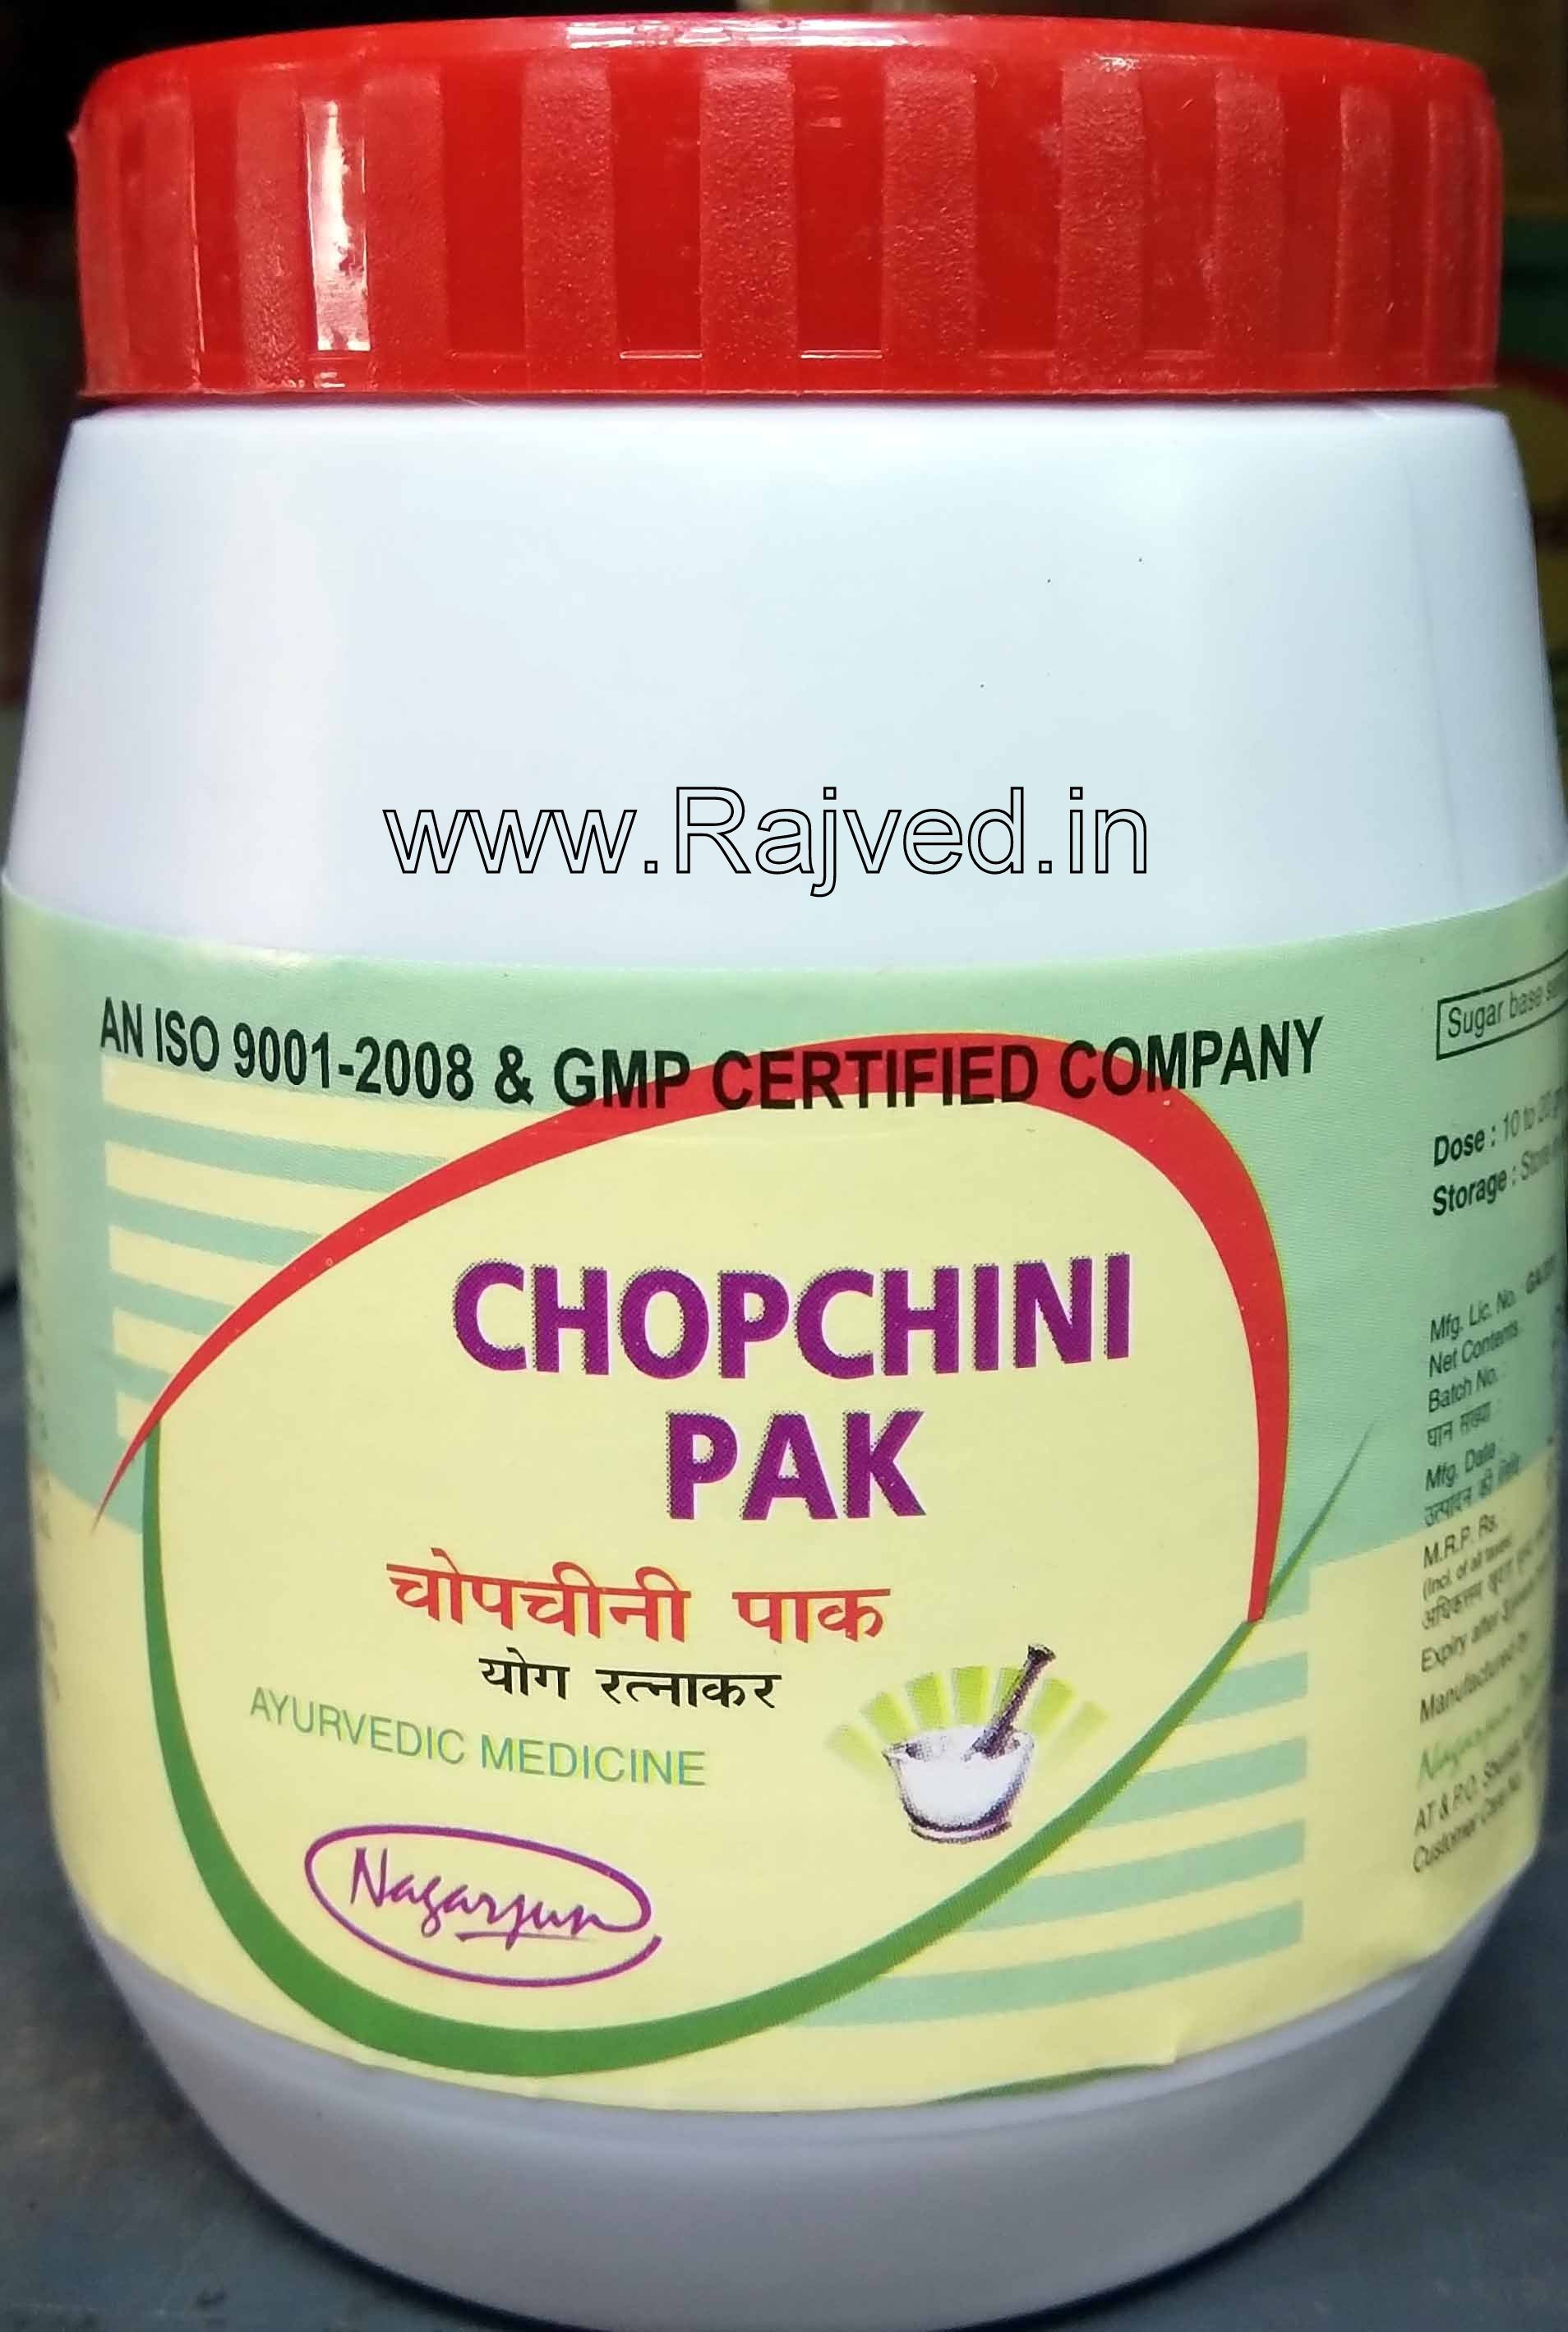 chopchini pak 400 gm upto 20% off Nagarjun Pharma Gujarat